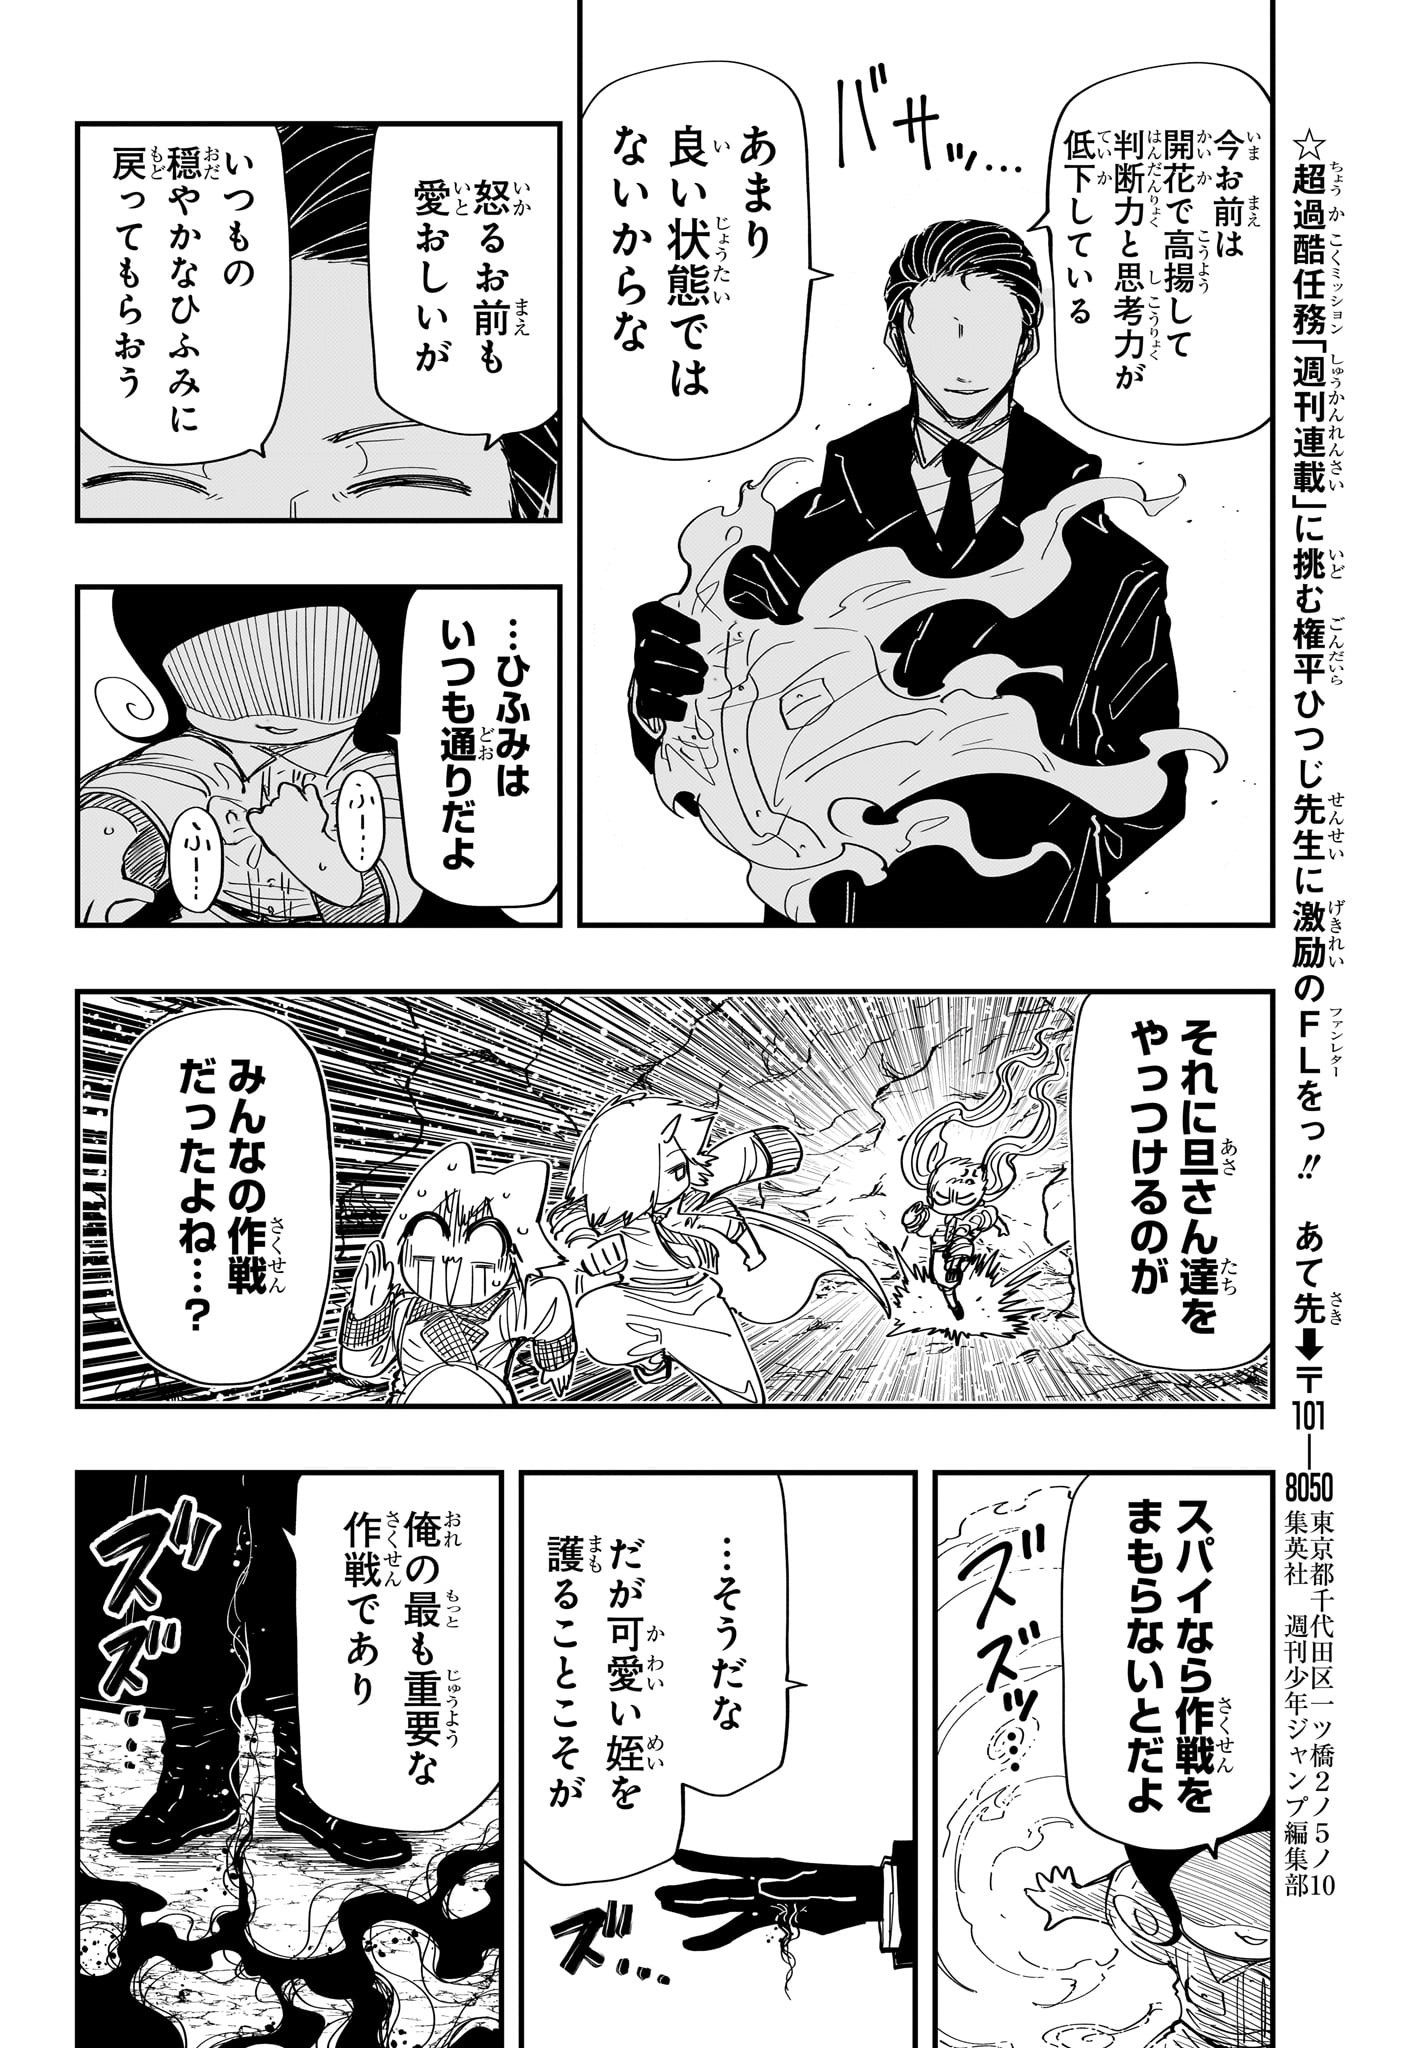 Yozakura-san Chi no Daisakusen - Chapter 214 - Page 18